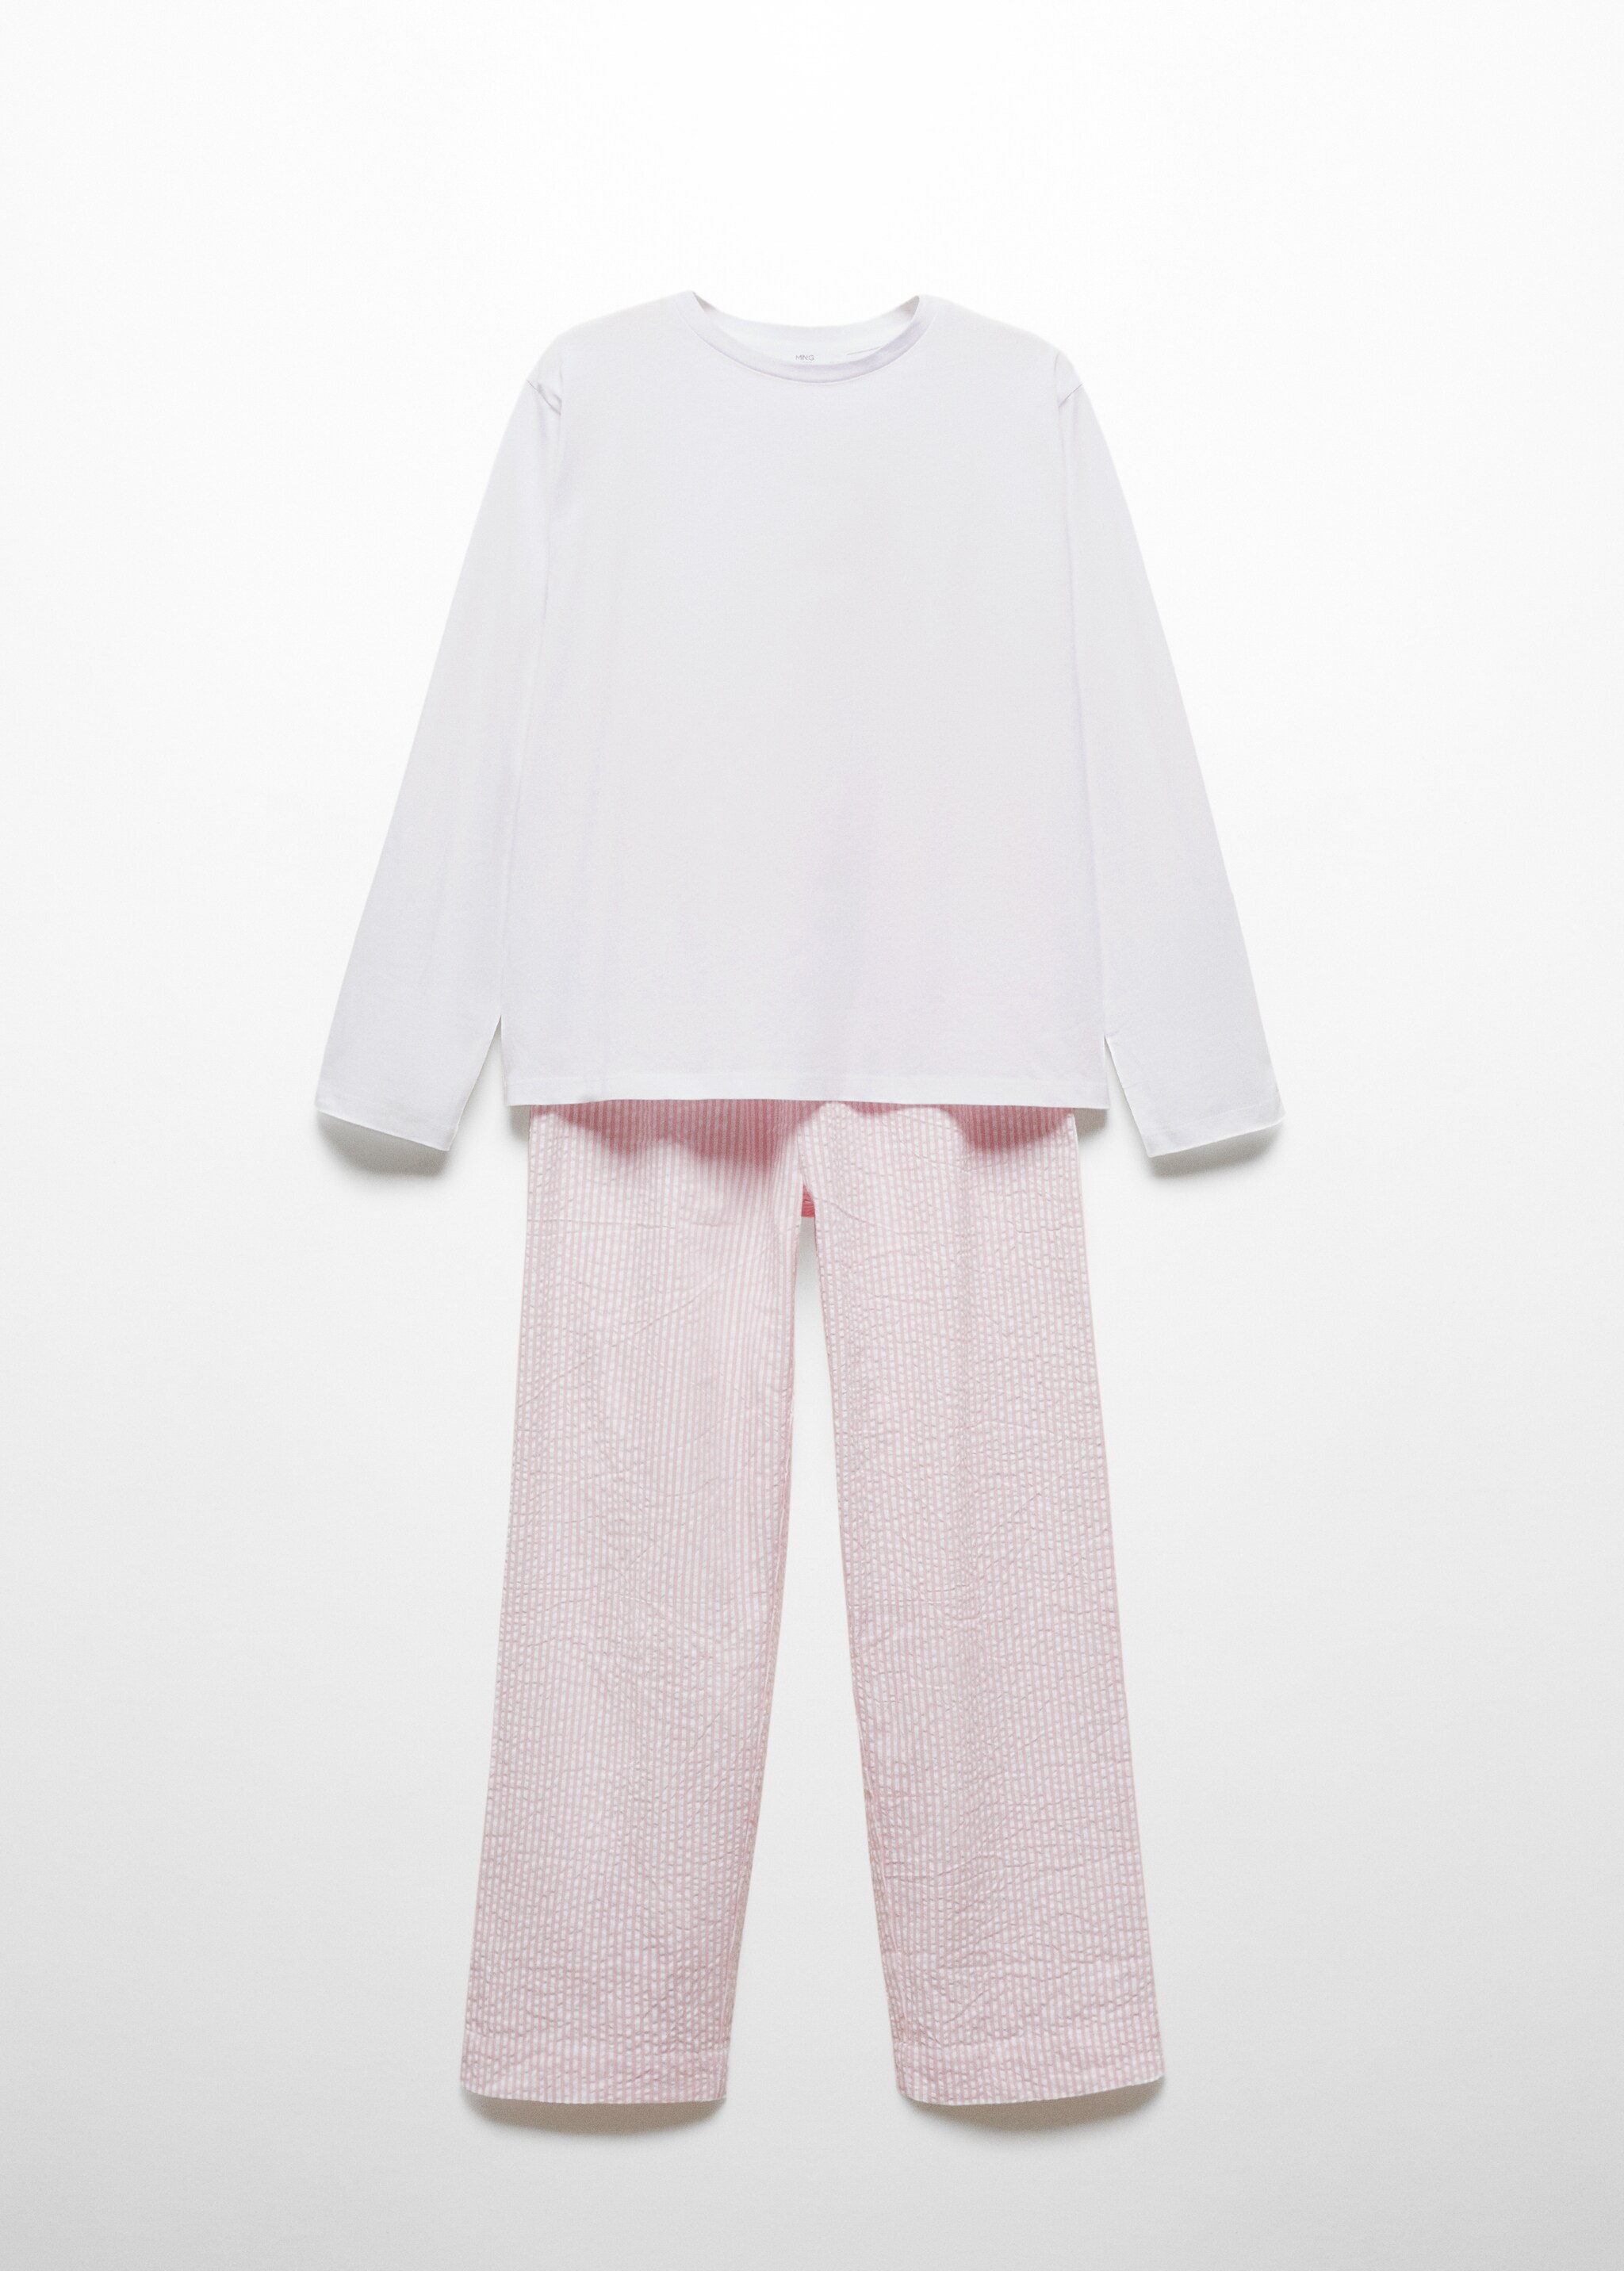 Хлопковая пижама из двух частей в полоску - Изделие без модели